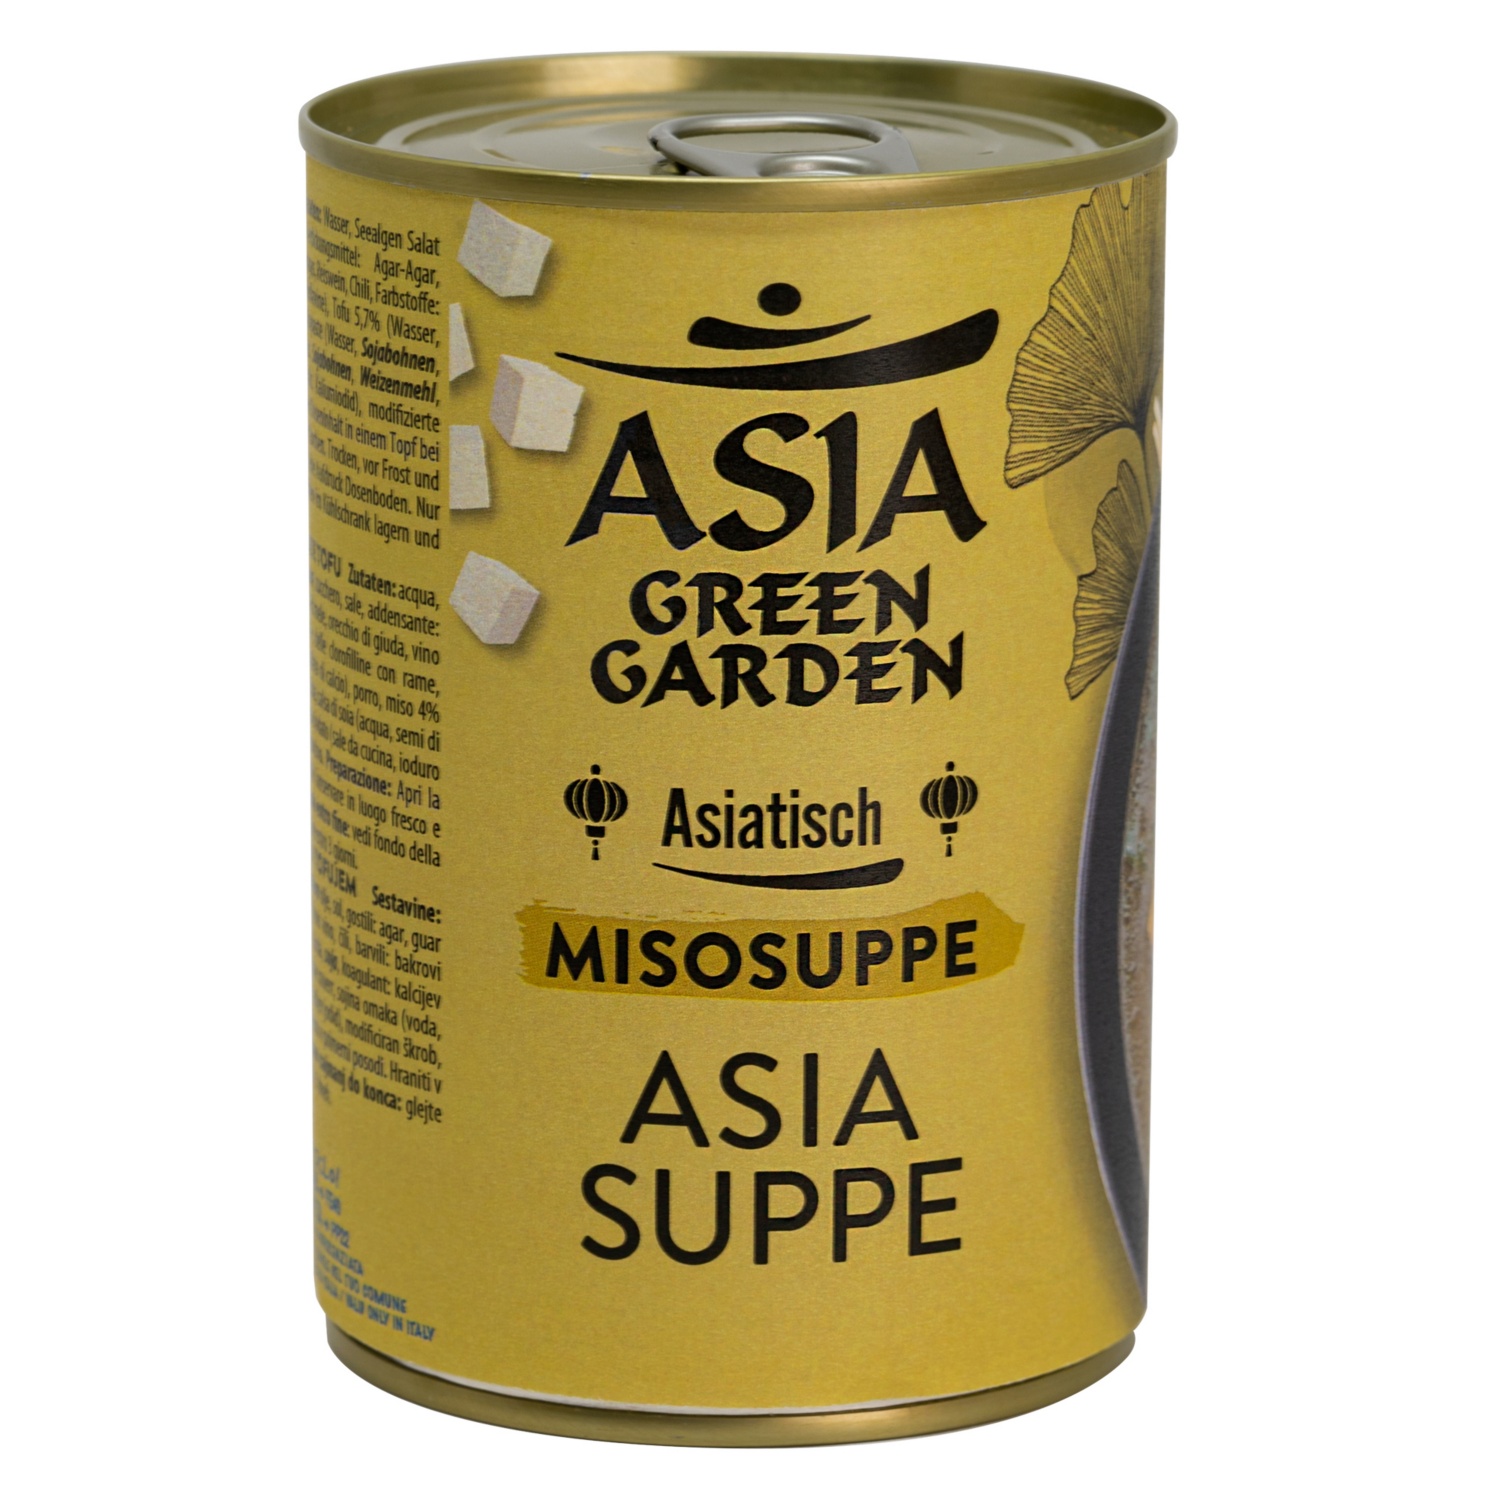 ASIA GREEN GARDEN Asiatische Suppe in der Dose, Miso